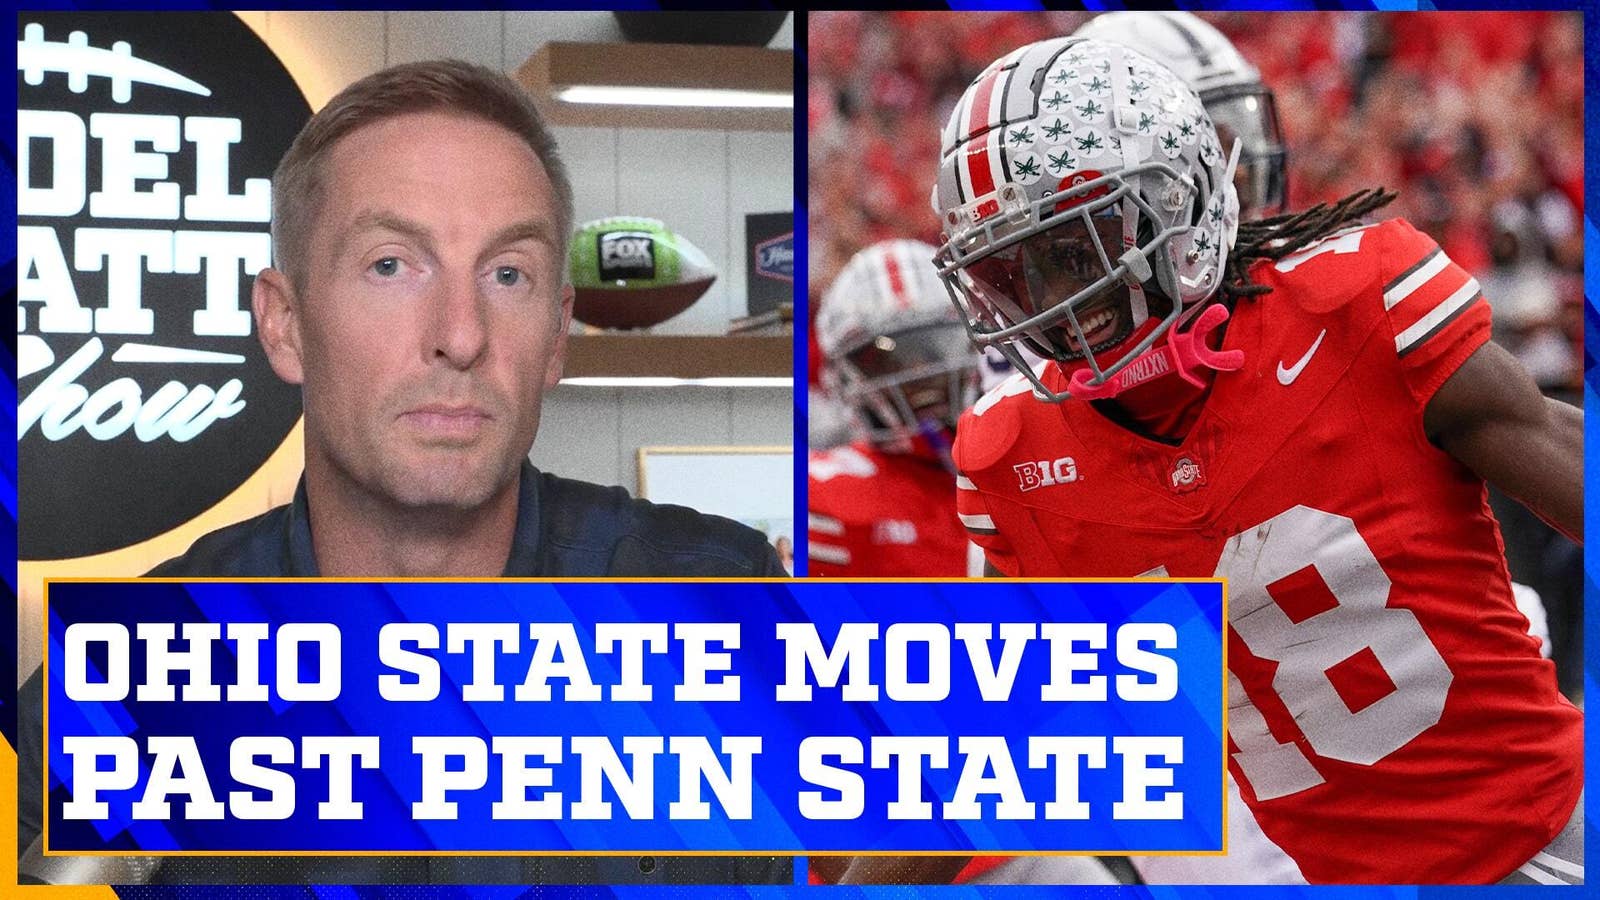 Joel Klatt breaks down Ohio State's win over Penn State